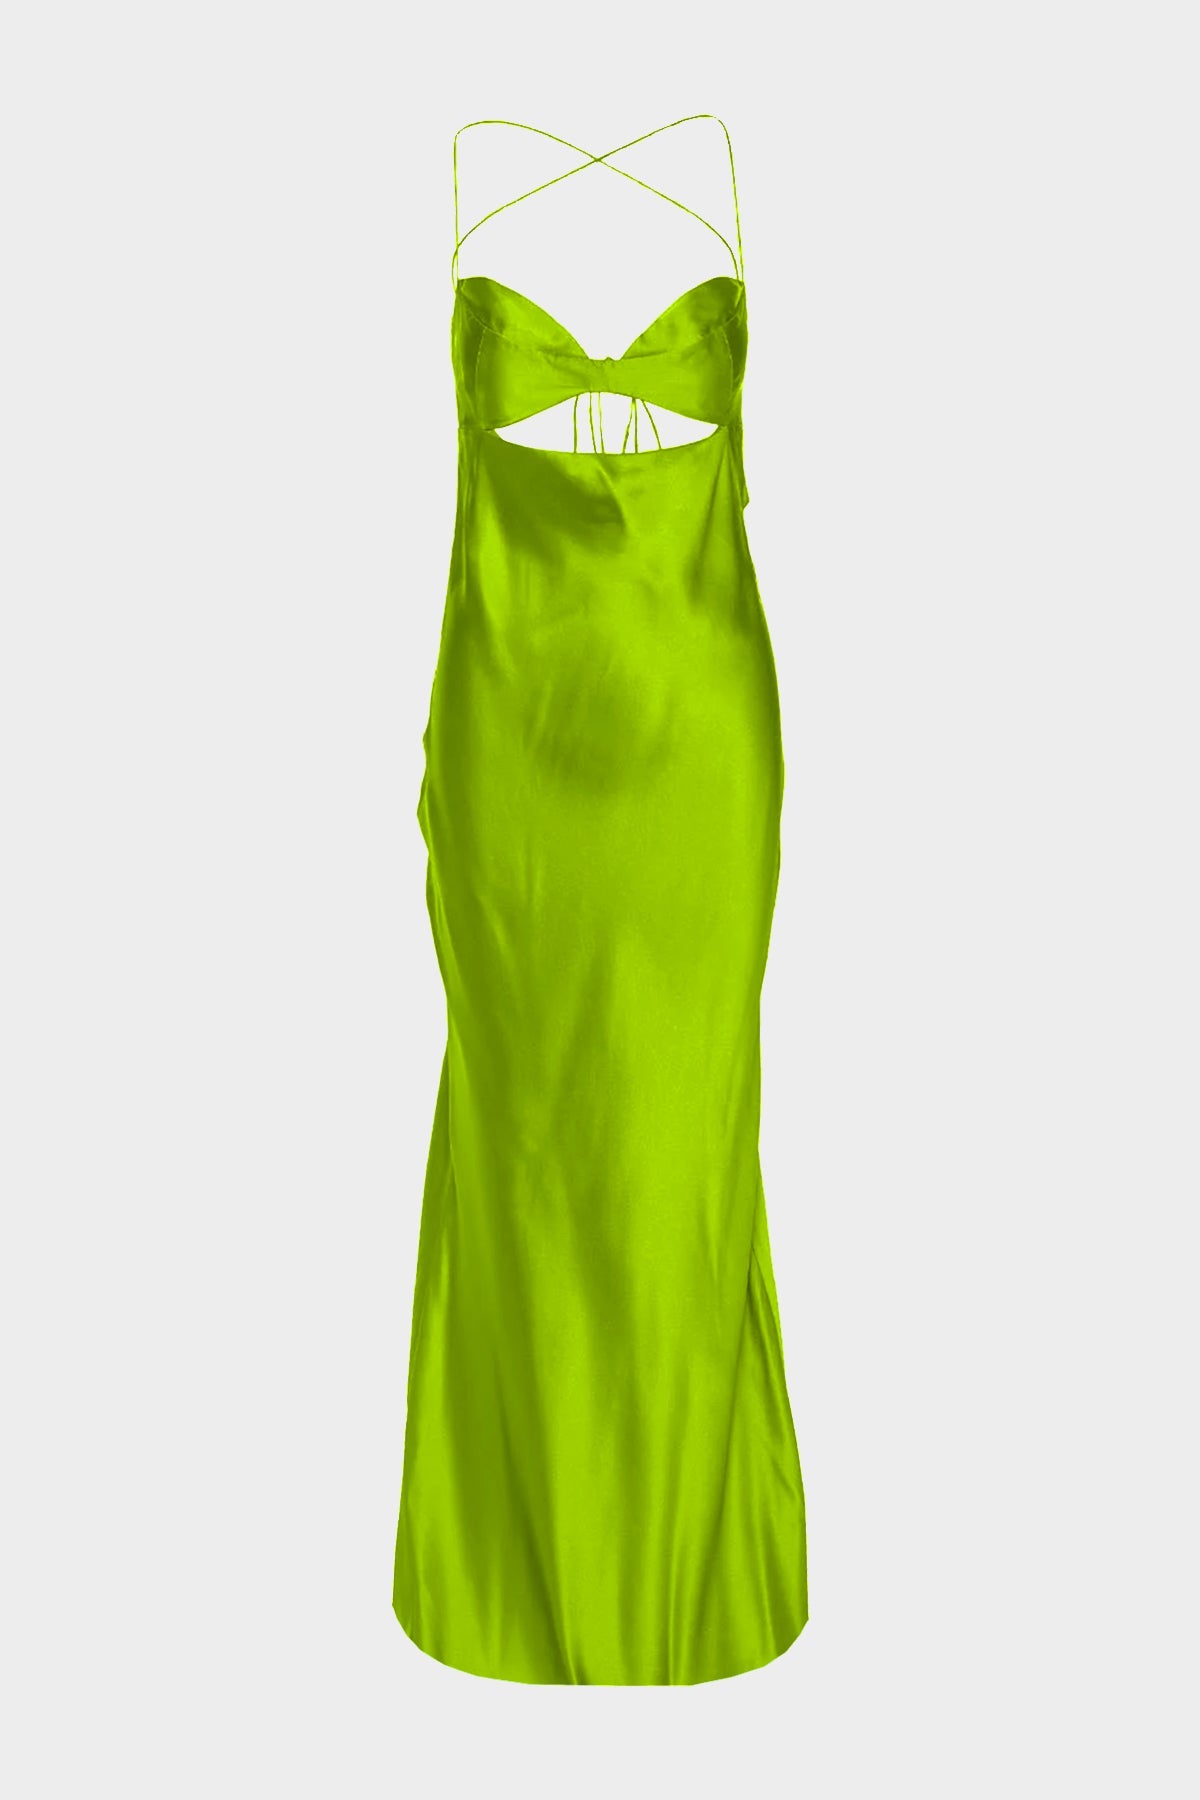 Balconette Bias Dress in Clover - shop-olivia.com